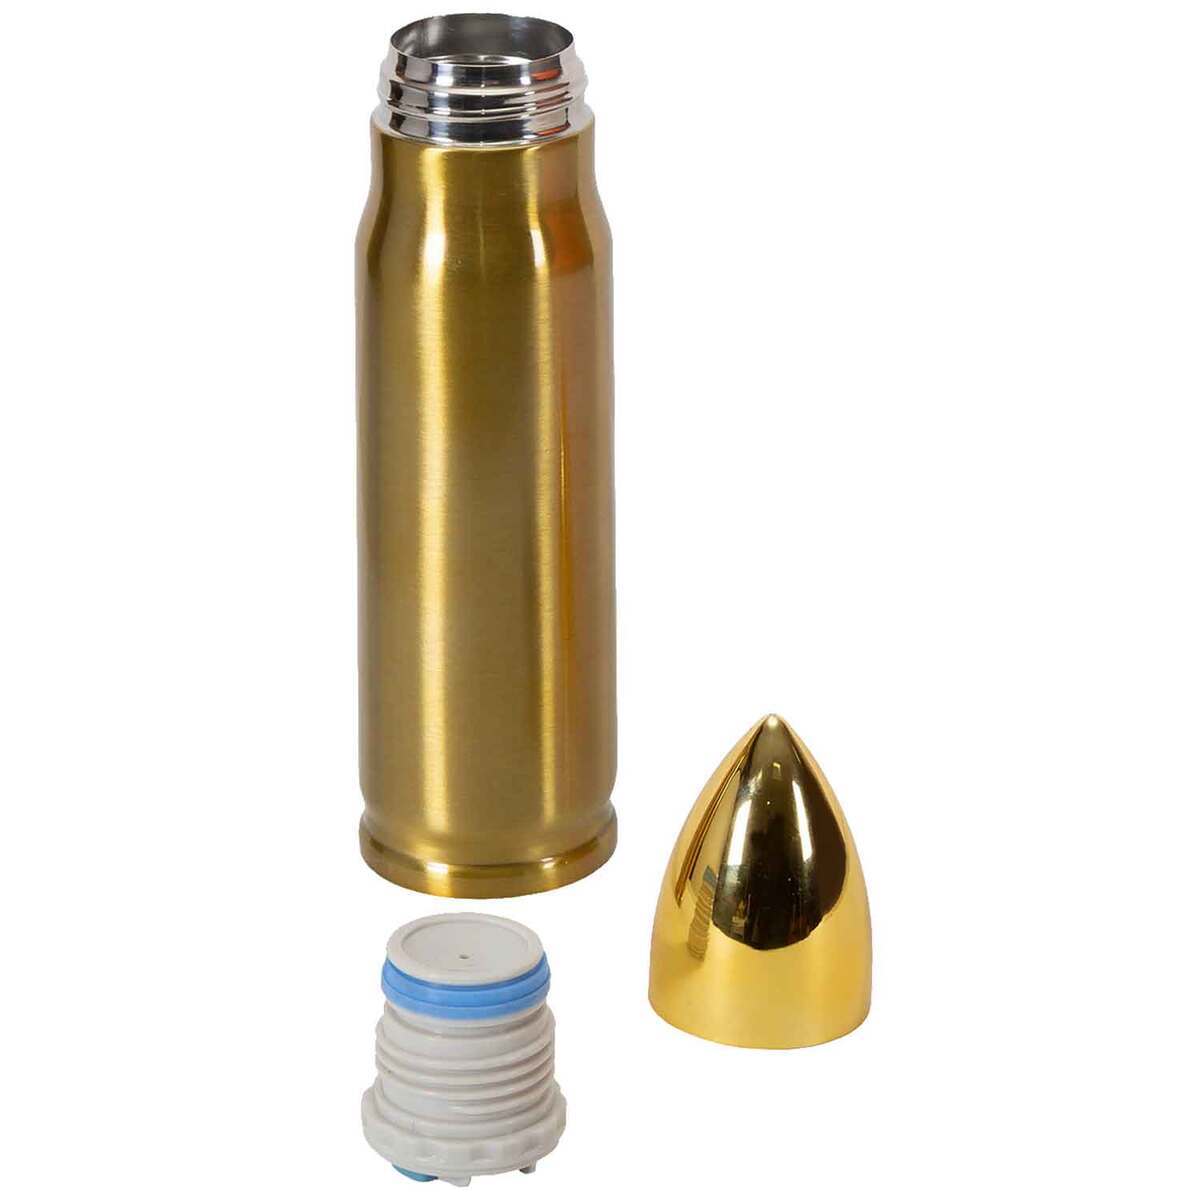 https://www.sportsmans.com/medias/stansport-17-oz-bullet-thermo-wide-mouth-insulated-bottle-gold-1762451-1.jpg?context=bWFzdGVyfGltYWdlc3w0MDcyMHxpbWFnZS9qcGVnfGhkNS9oMTkvMTA5MDcxNTQzODI4NzgvMTc2MjQ1MS0xX2Jhc2UtY29udmVyc2lvbkZvcm1hdF8xMjAwLWNvbnZlcnNpb25Gb3JtYXR8YzJlODY0ZjA3ZjkxYTU4MDNlYTY4NDk2ZmYxODc4YTg5Yzg1NzM4YmRmYjU0NGYyYTk0ODBkZGNiZjZiZGUyOQ